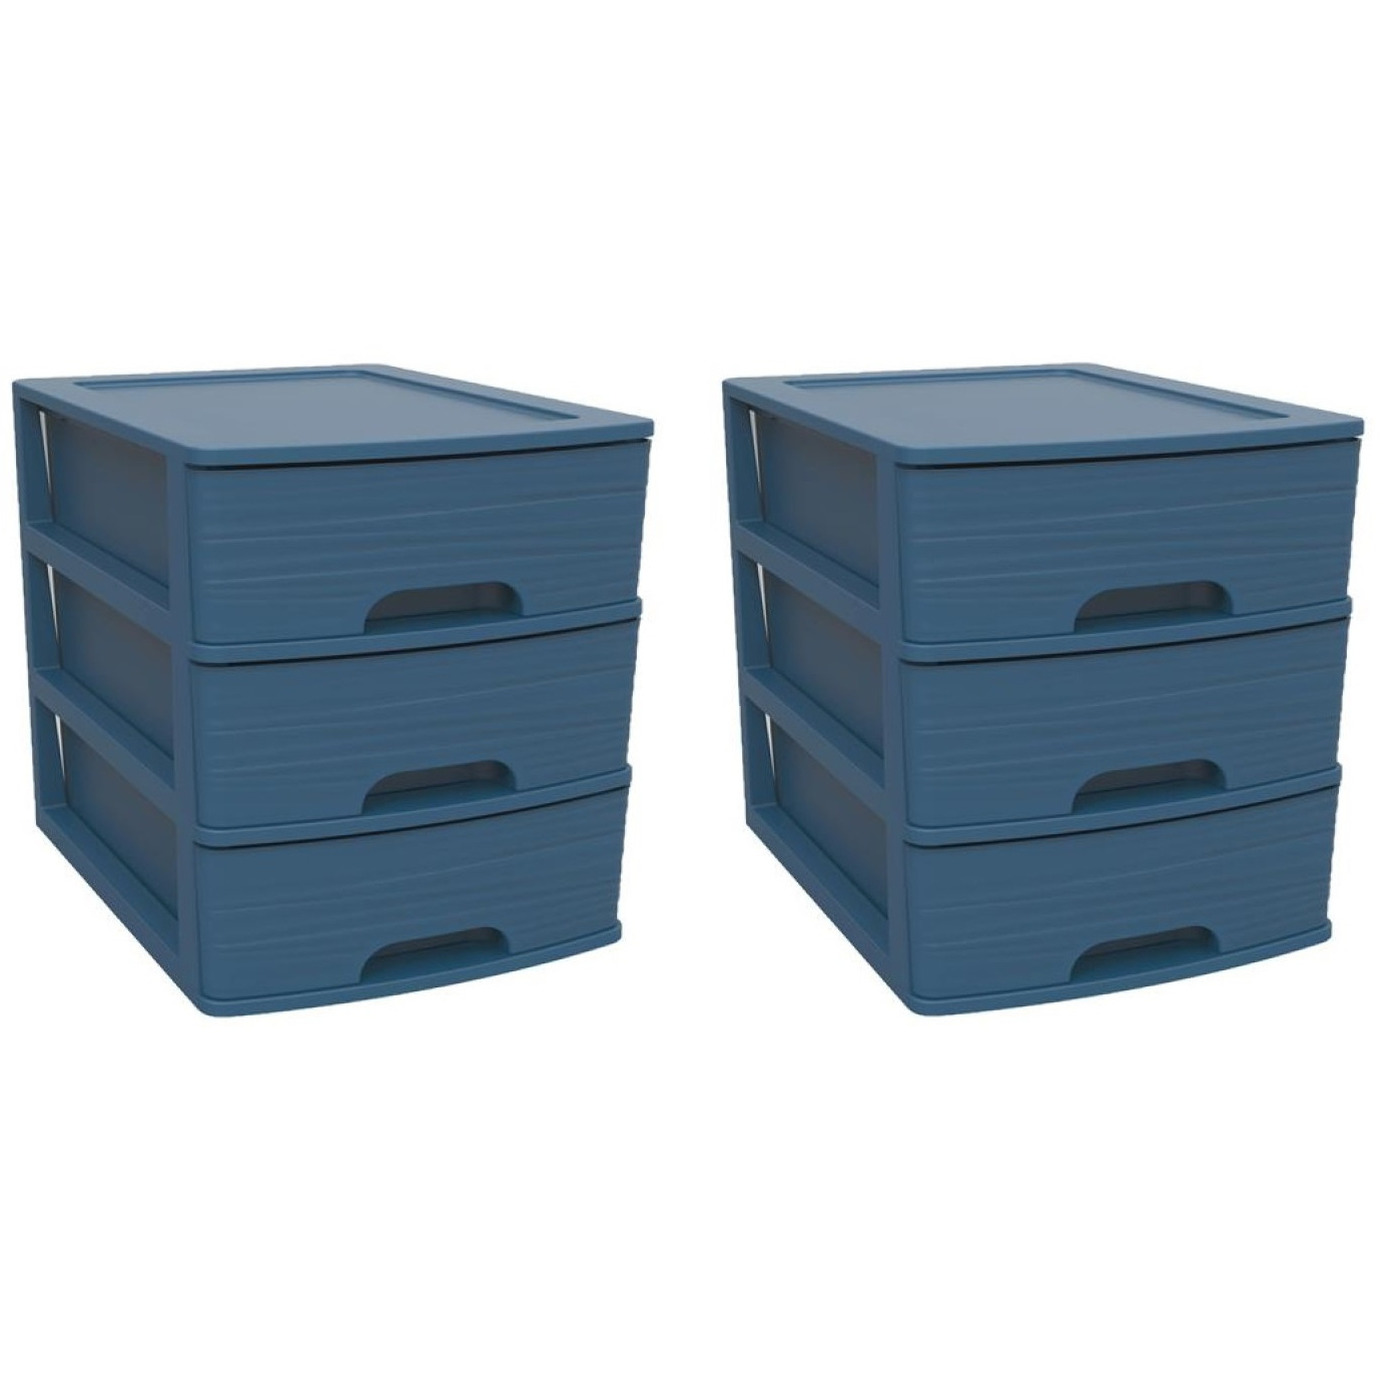 2x stuks ladenkast/bureau organizers blauw A5 3x lades stapelbaar L27 x B36 x H35 cm -